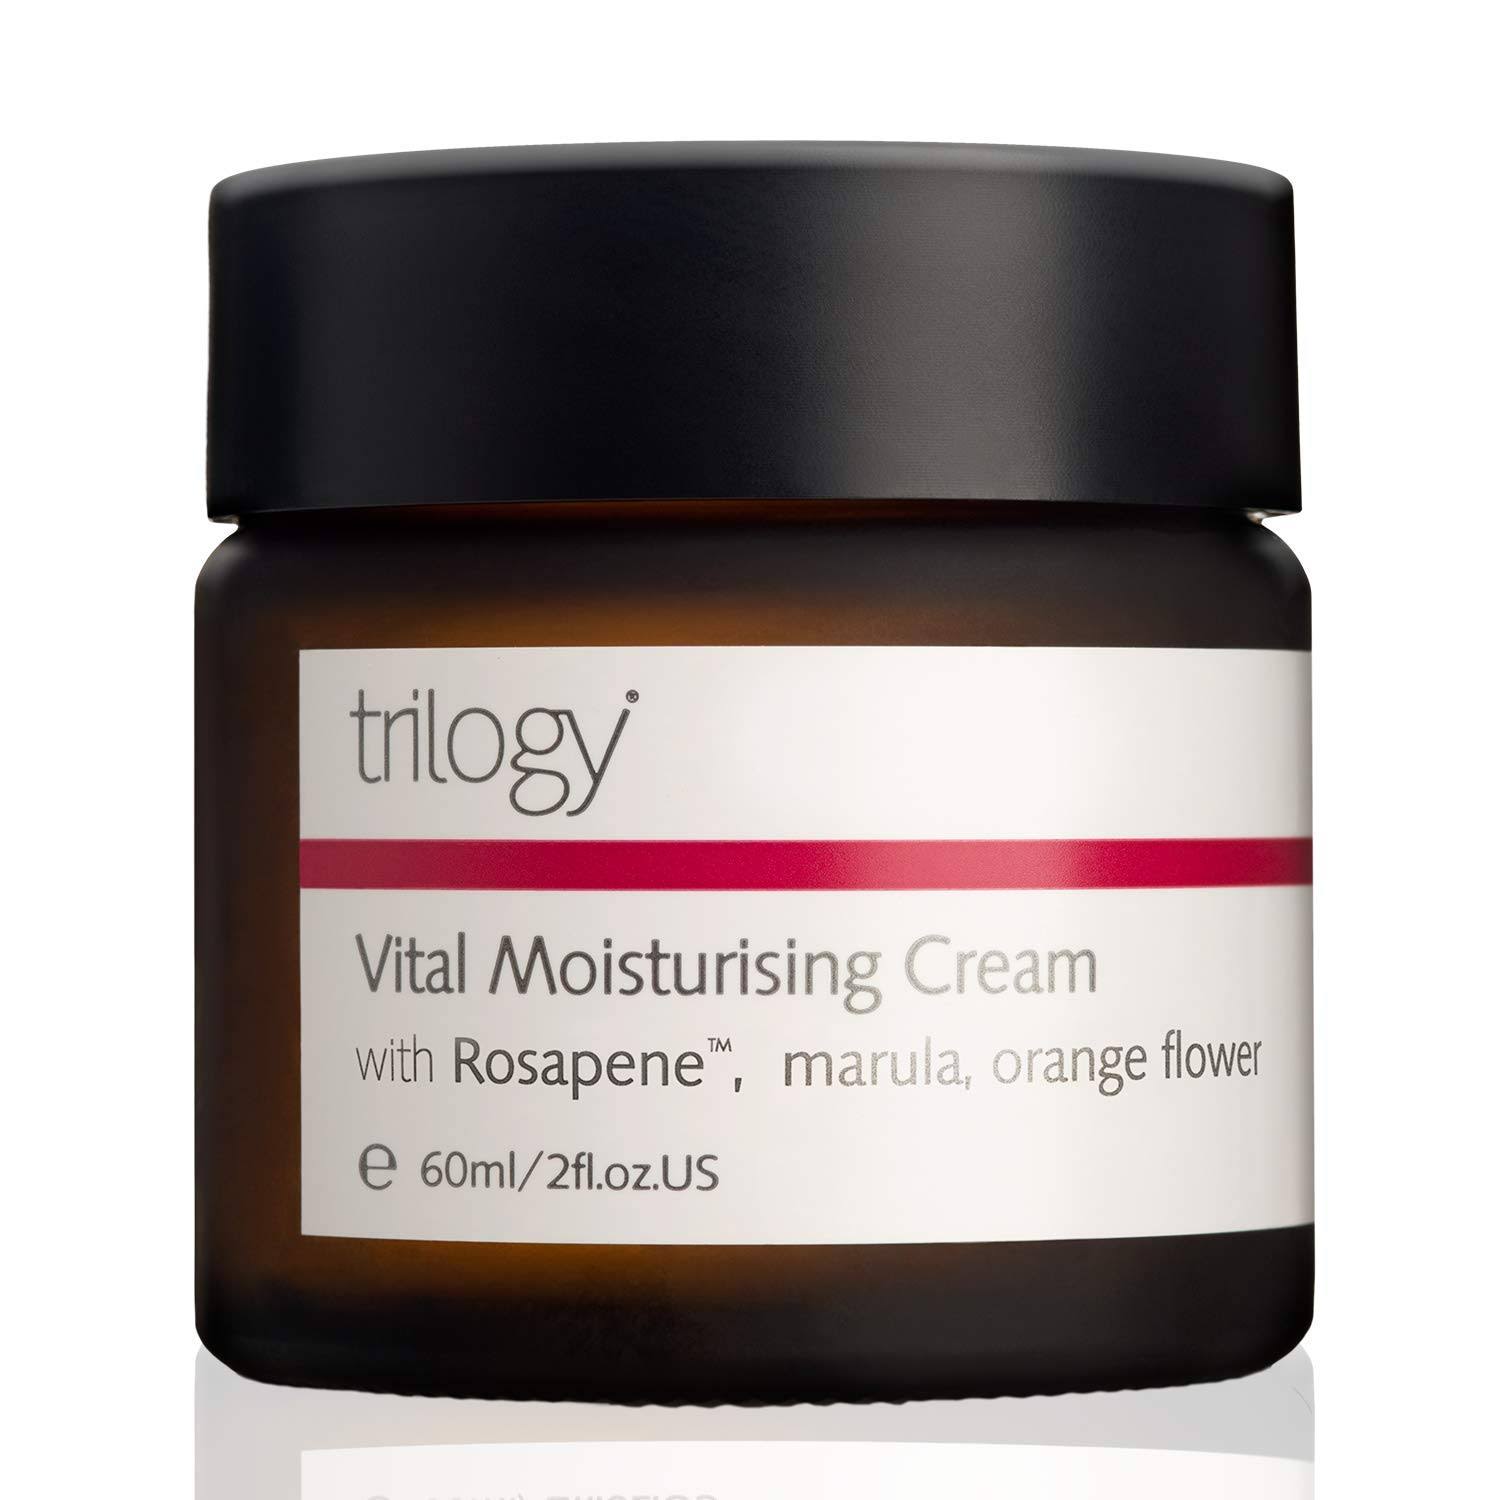 Trilogy Face Care Vital Moisturising Cream